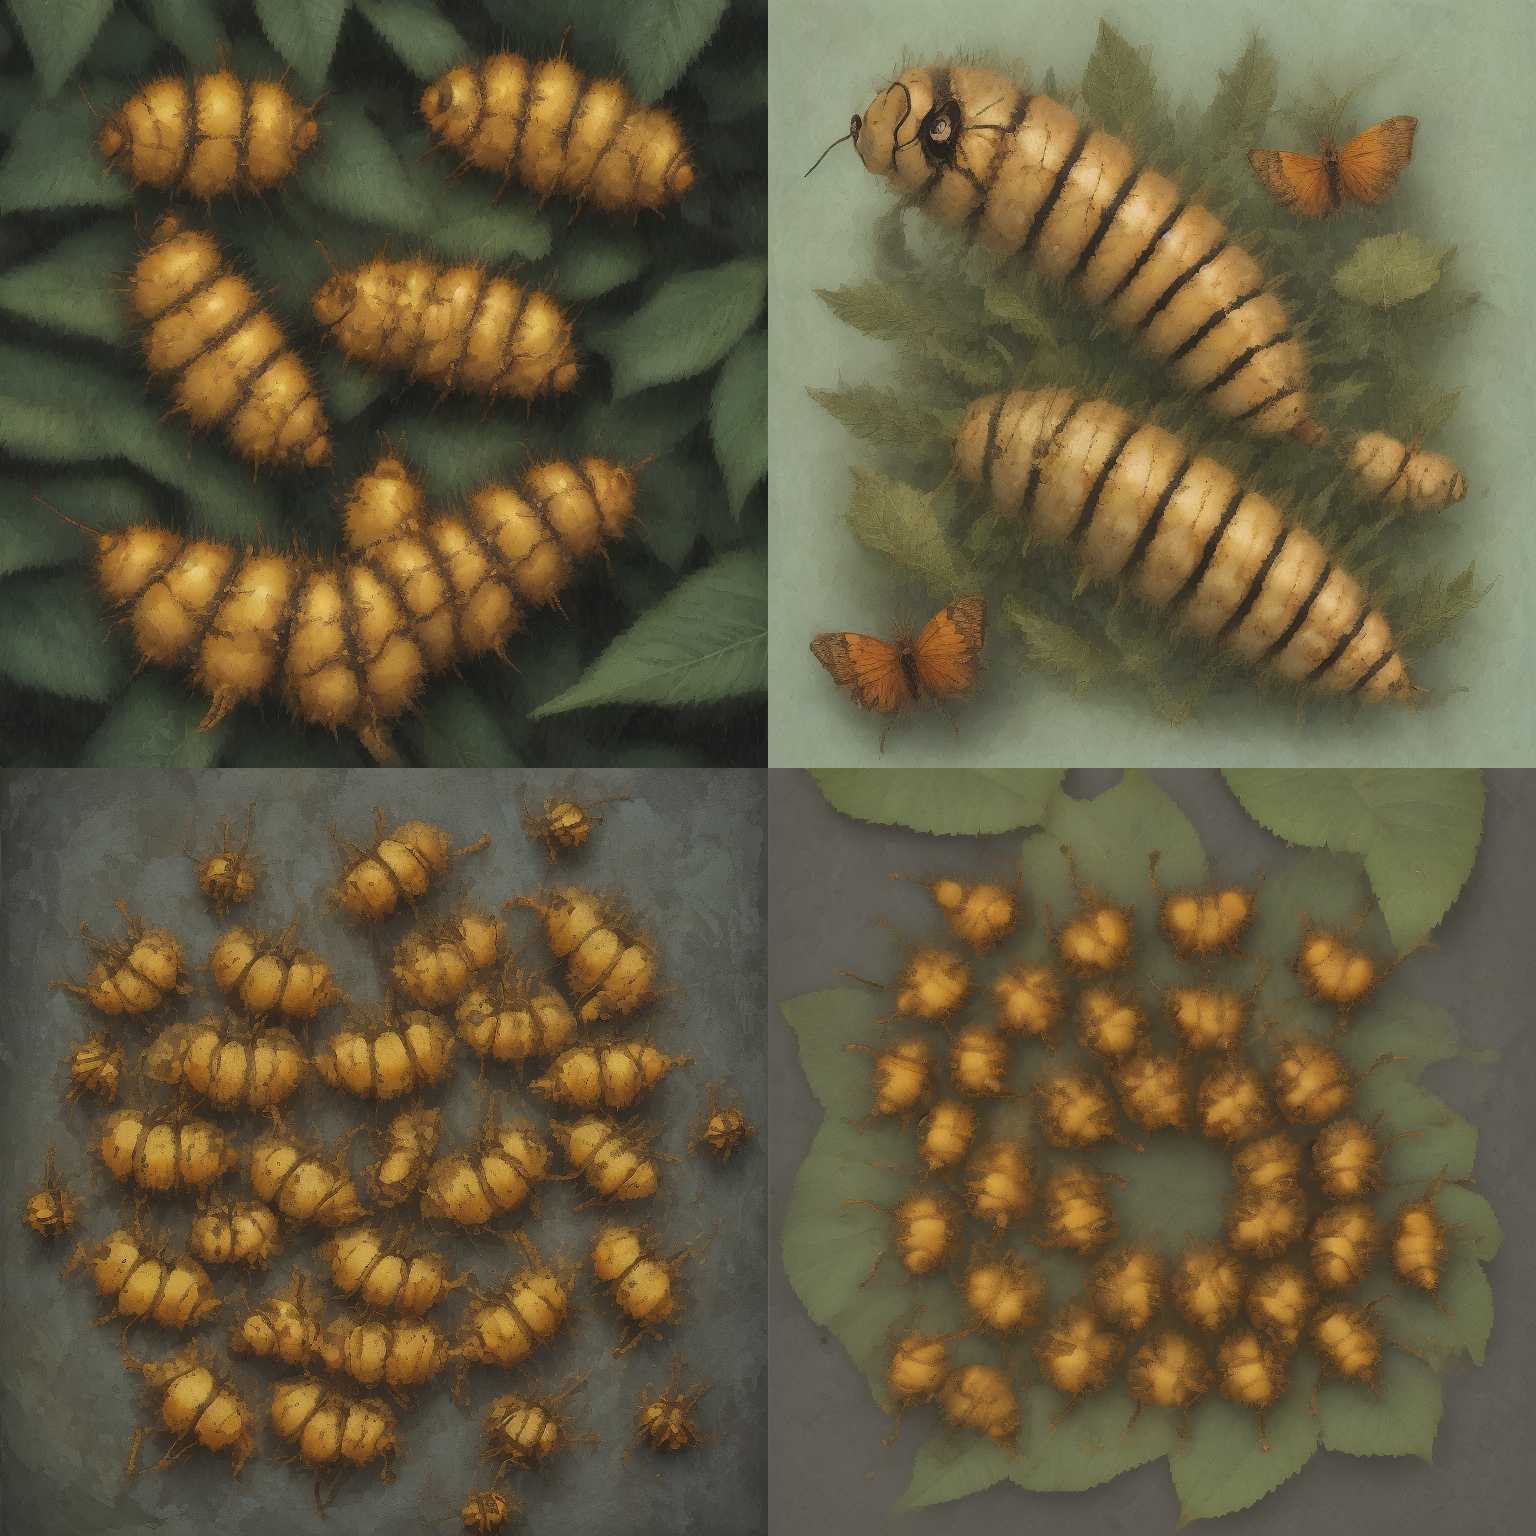 A caterpillar during metamorphosis